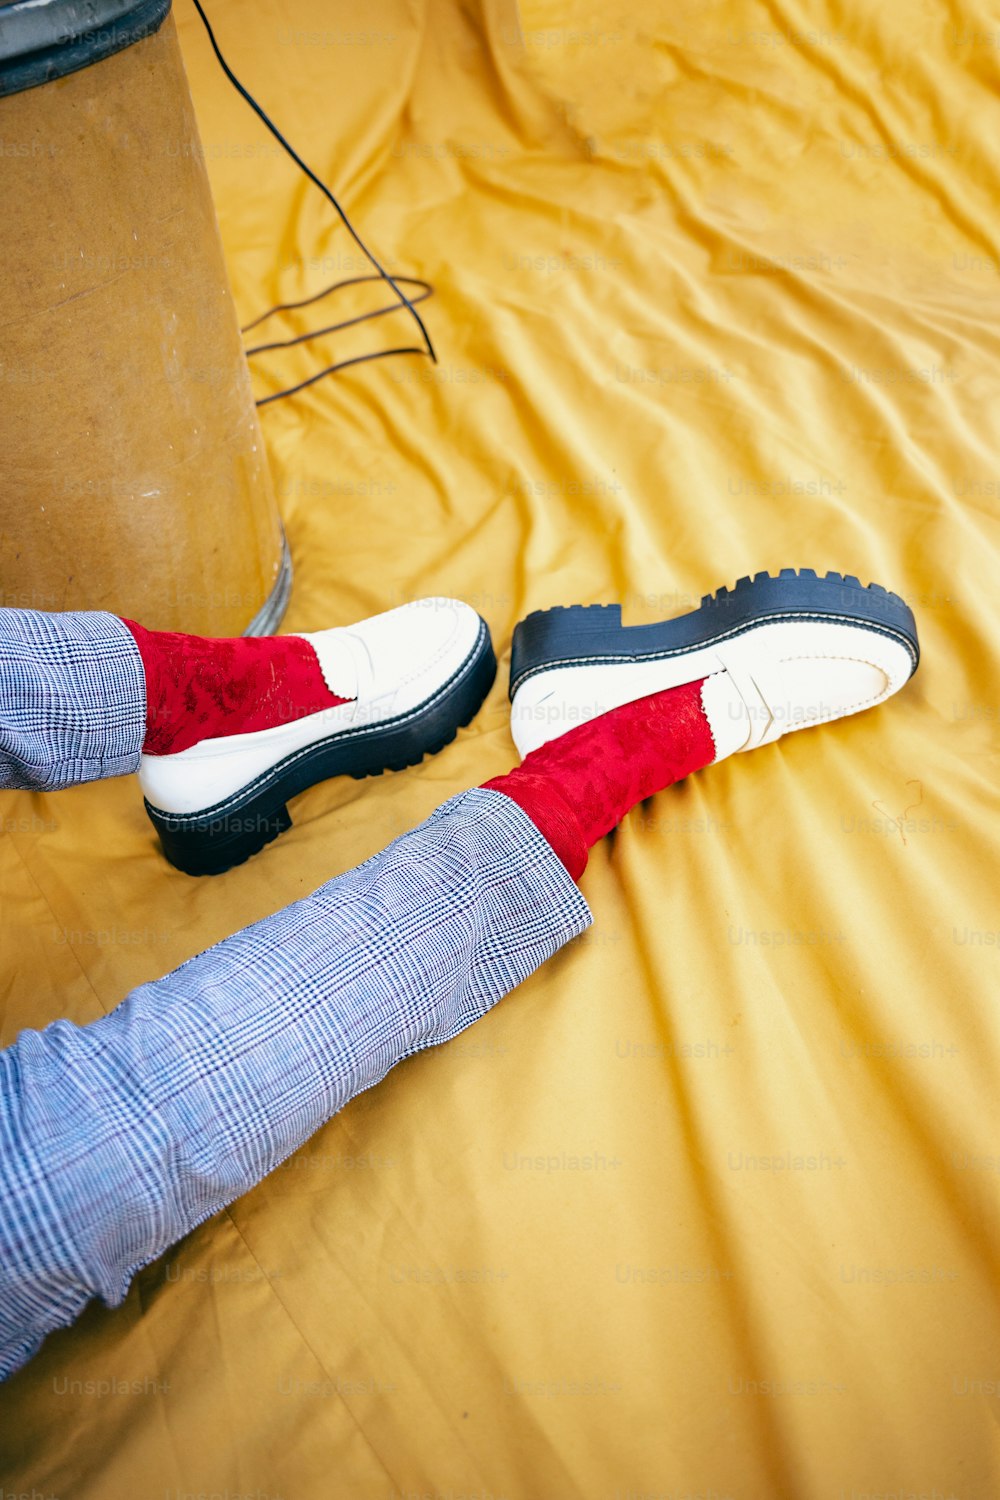 une personne allongée sur un lit avec des chaussures rouges et blanches